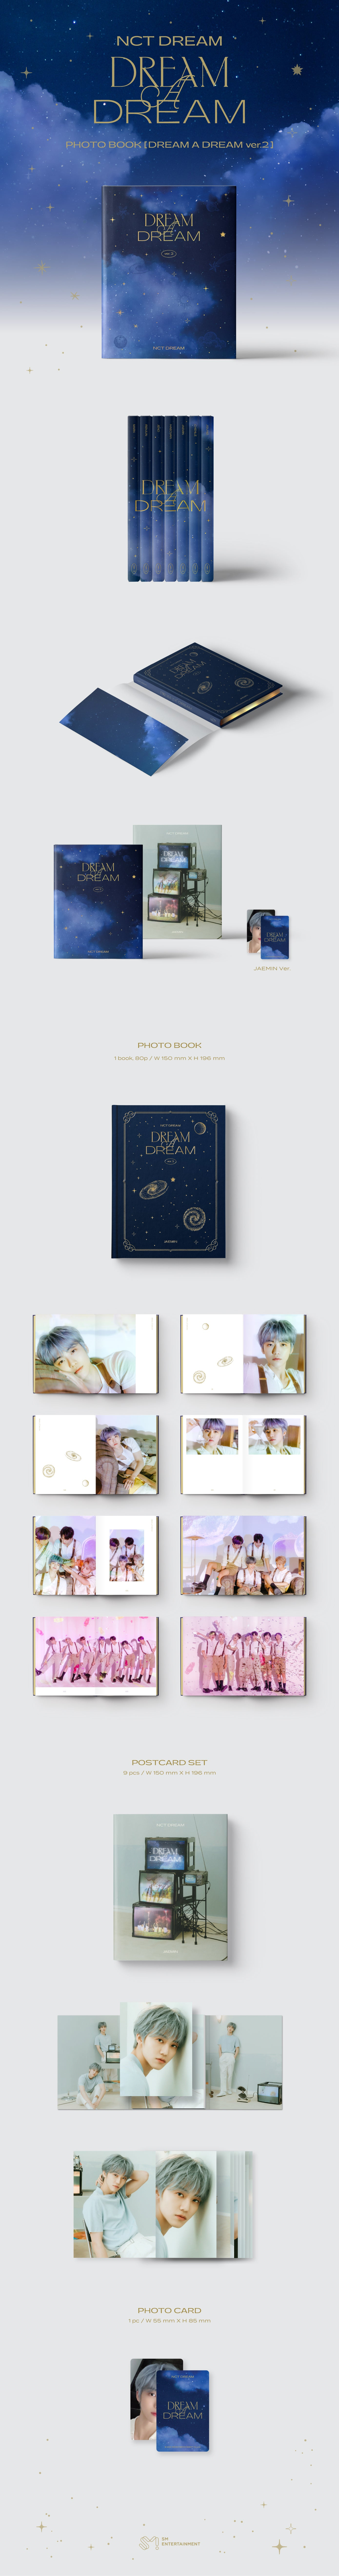 NCT Dream – DREAM A DREAM Ver.2 (Fotobuch)